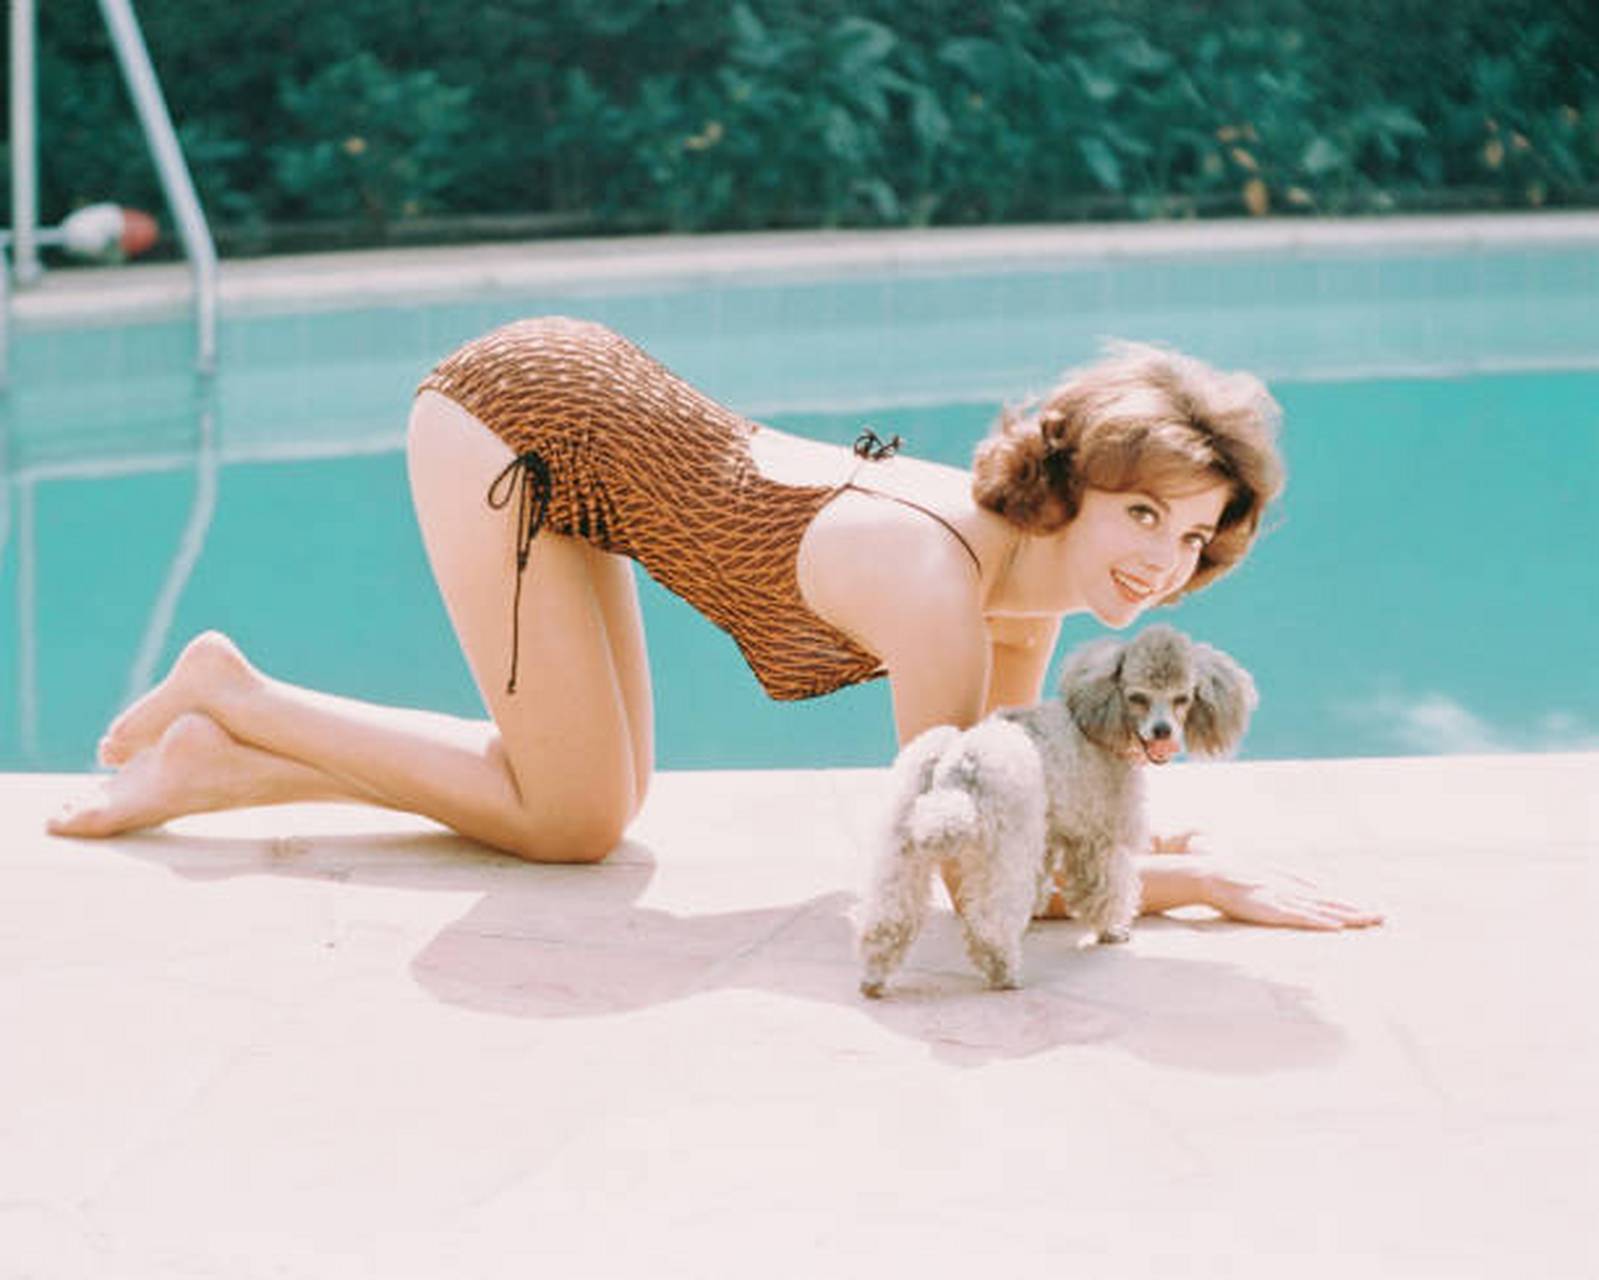 1970年代,美国电影女星娜塔莉·伍德在泳池边模仿贵宾犬